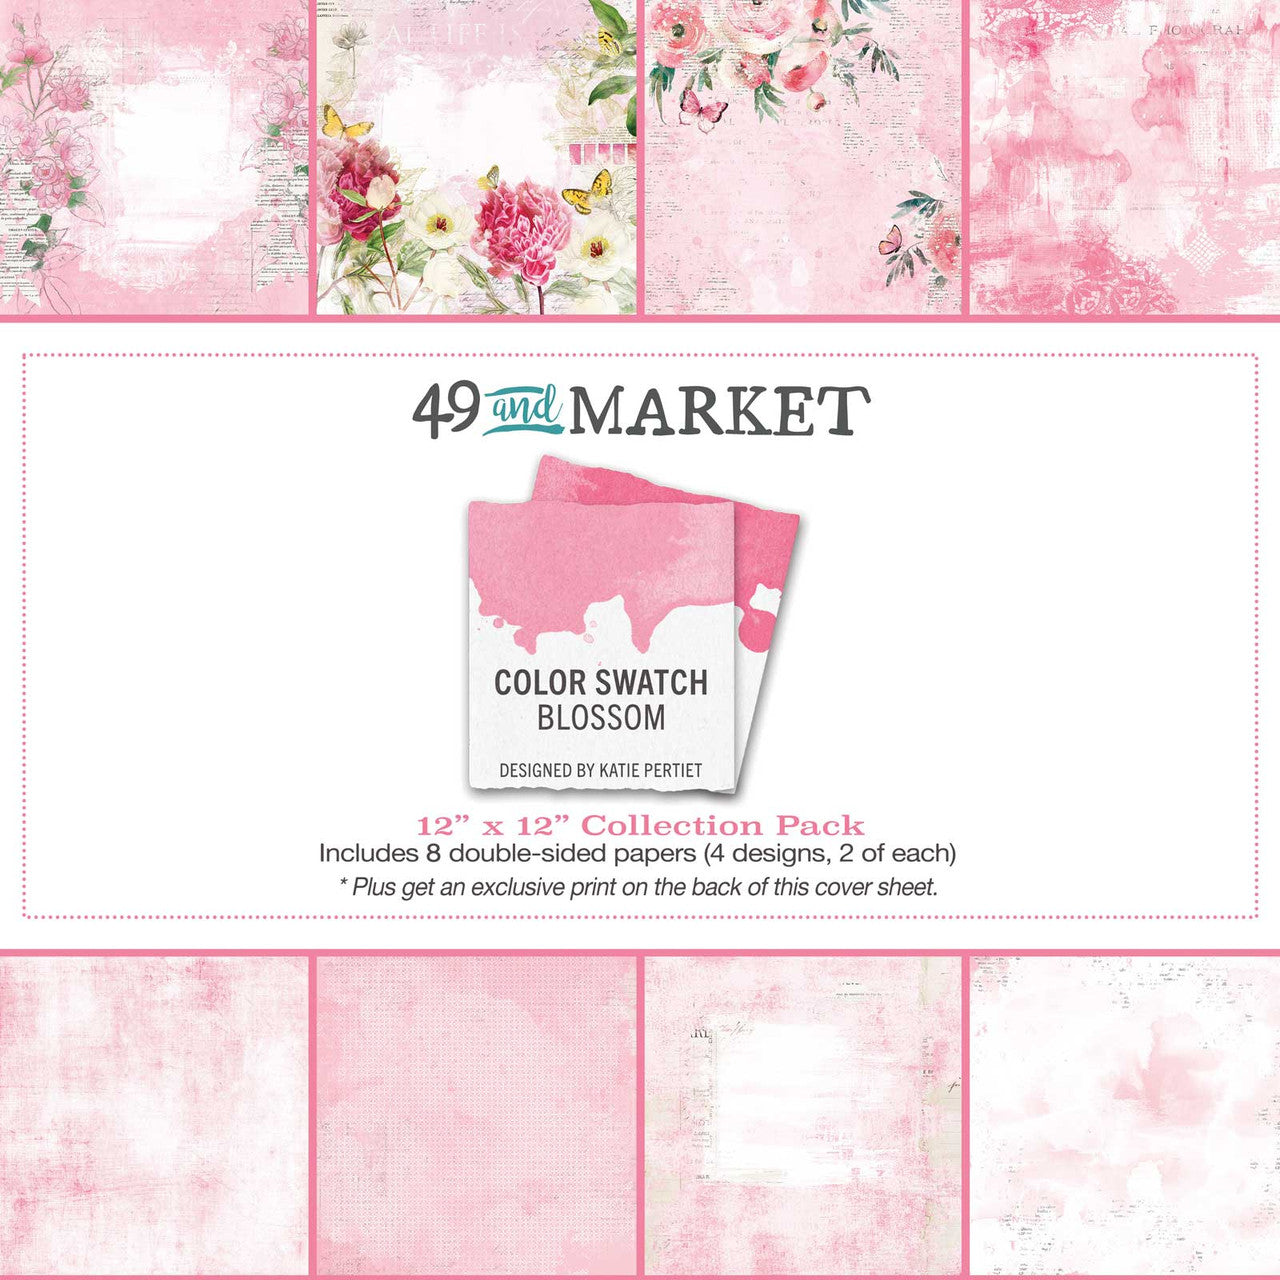 Paquete de papel de colección 49 y Market Color Swatch Blossom 12 x 12